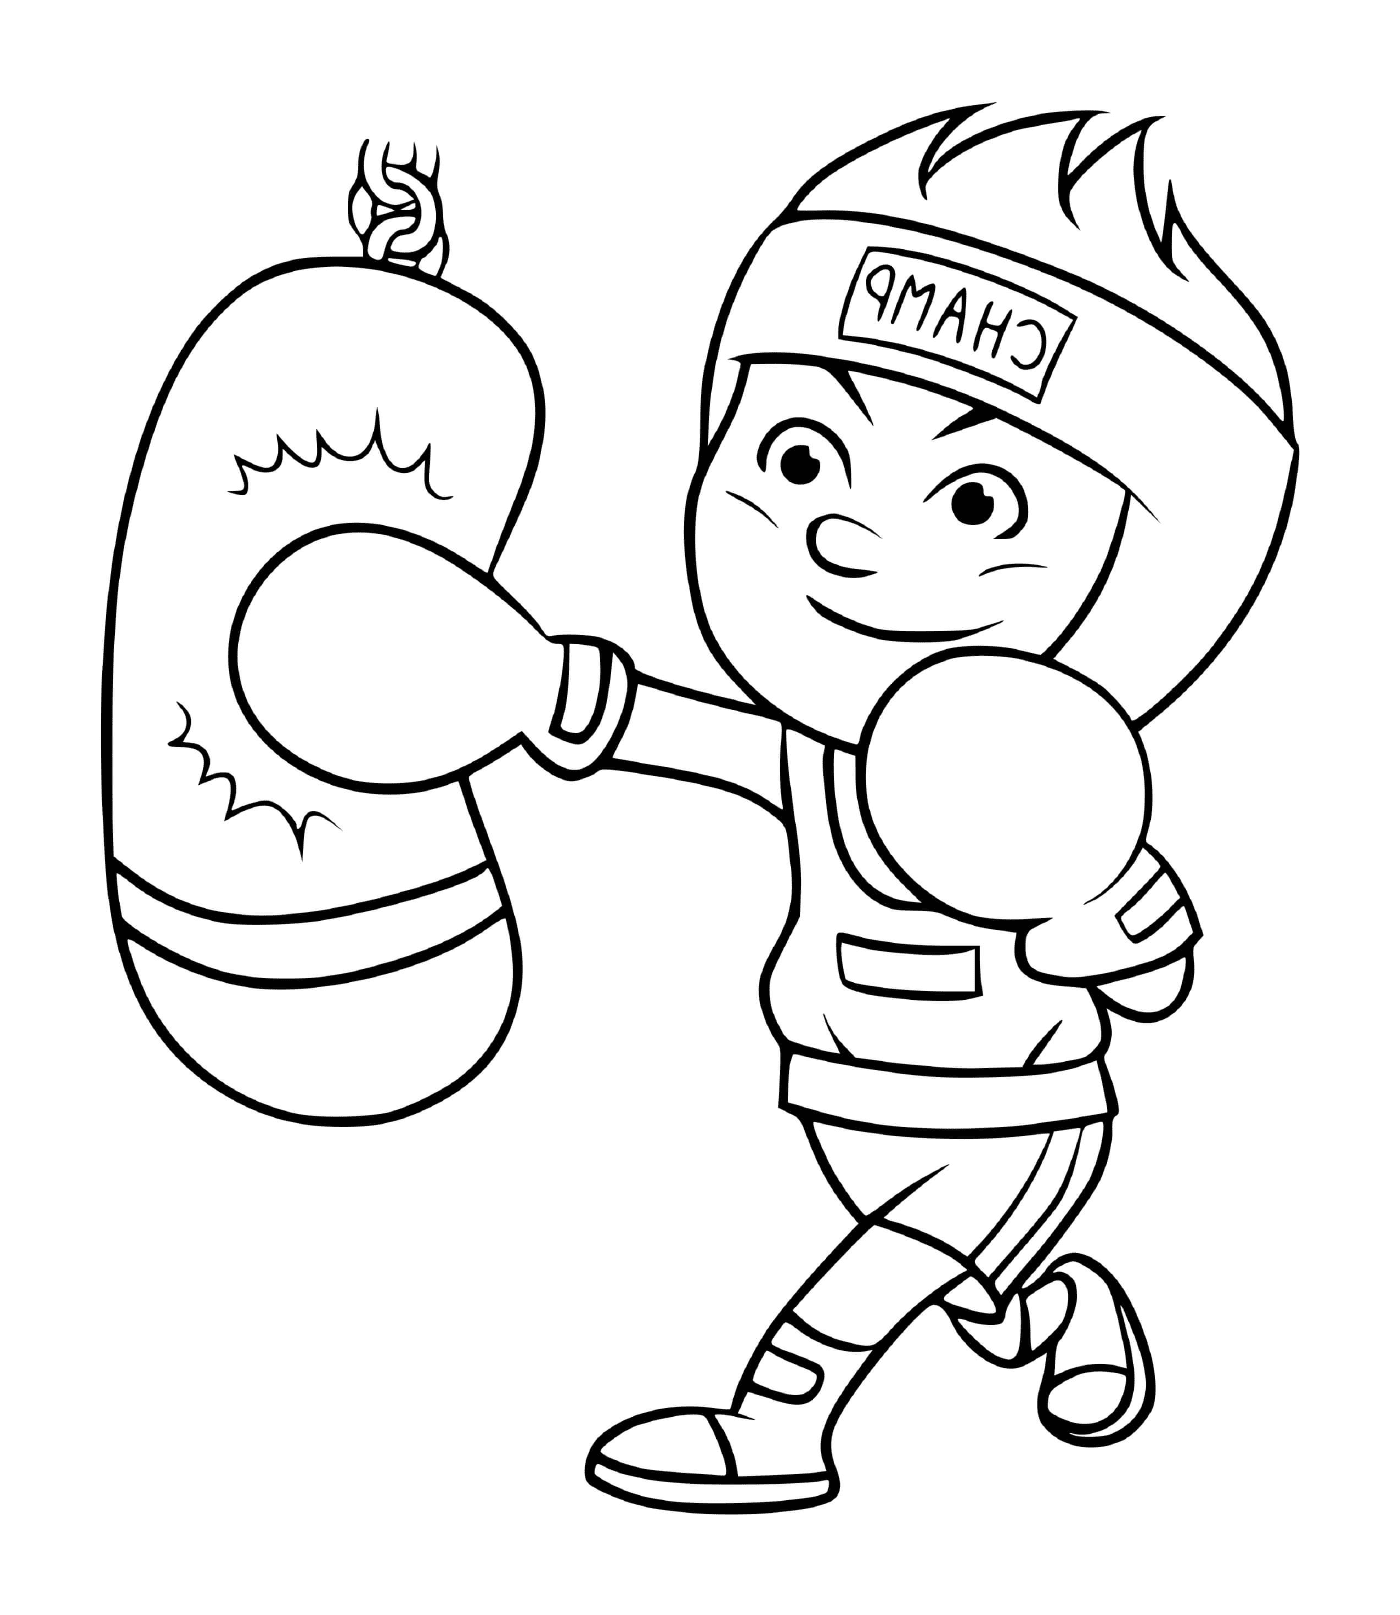  Ein junger Junge trainiert, um Boxmeister zu werden 